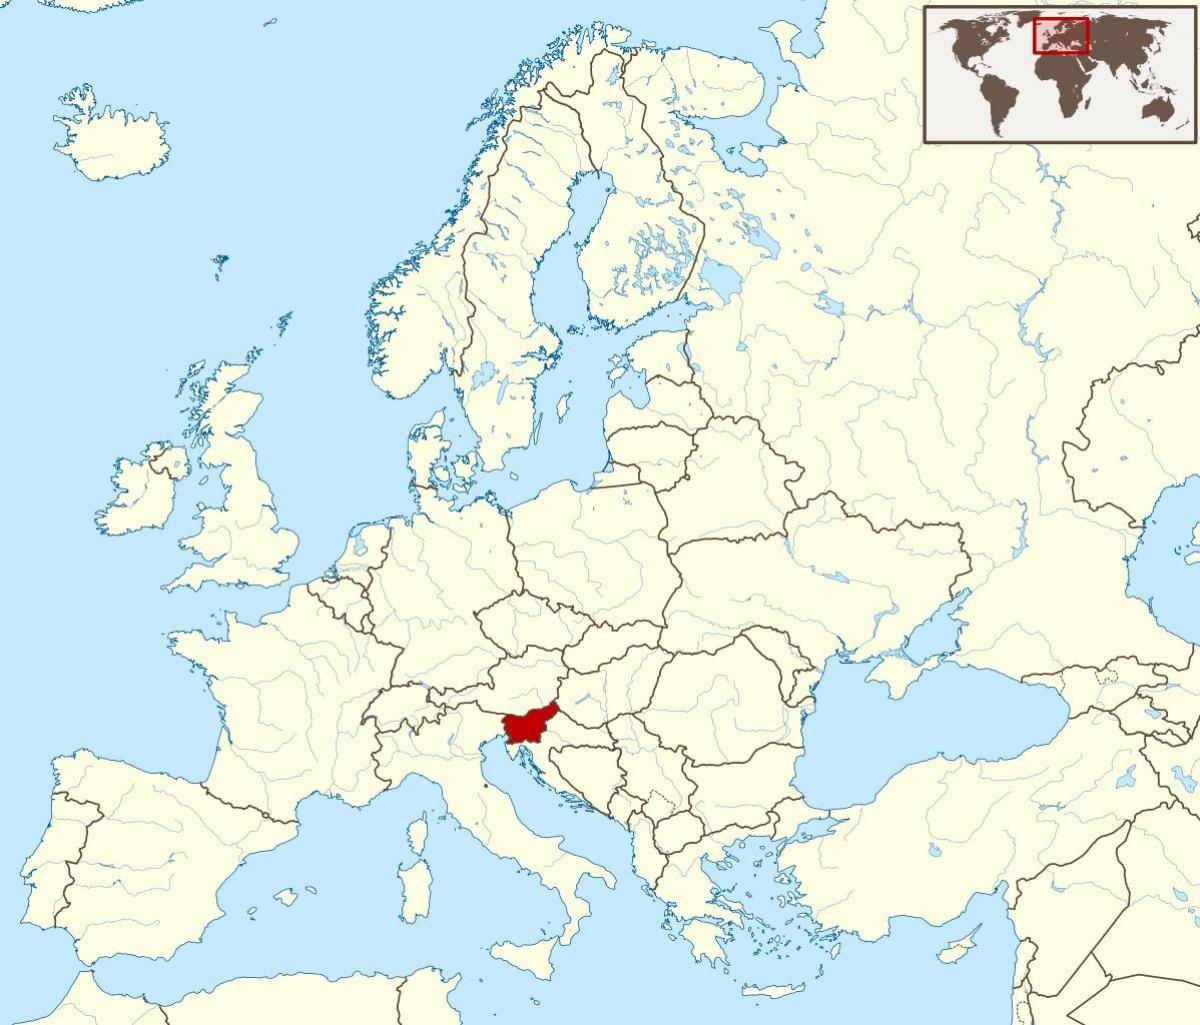 슬로베니아에 위치하는 세계 지도